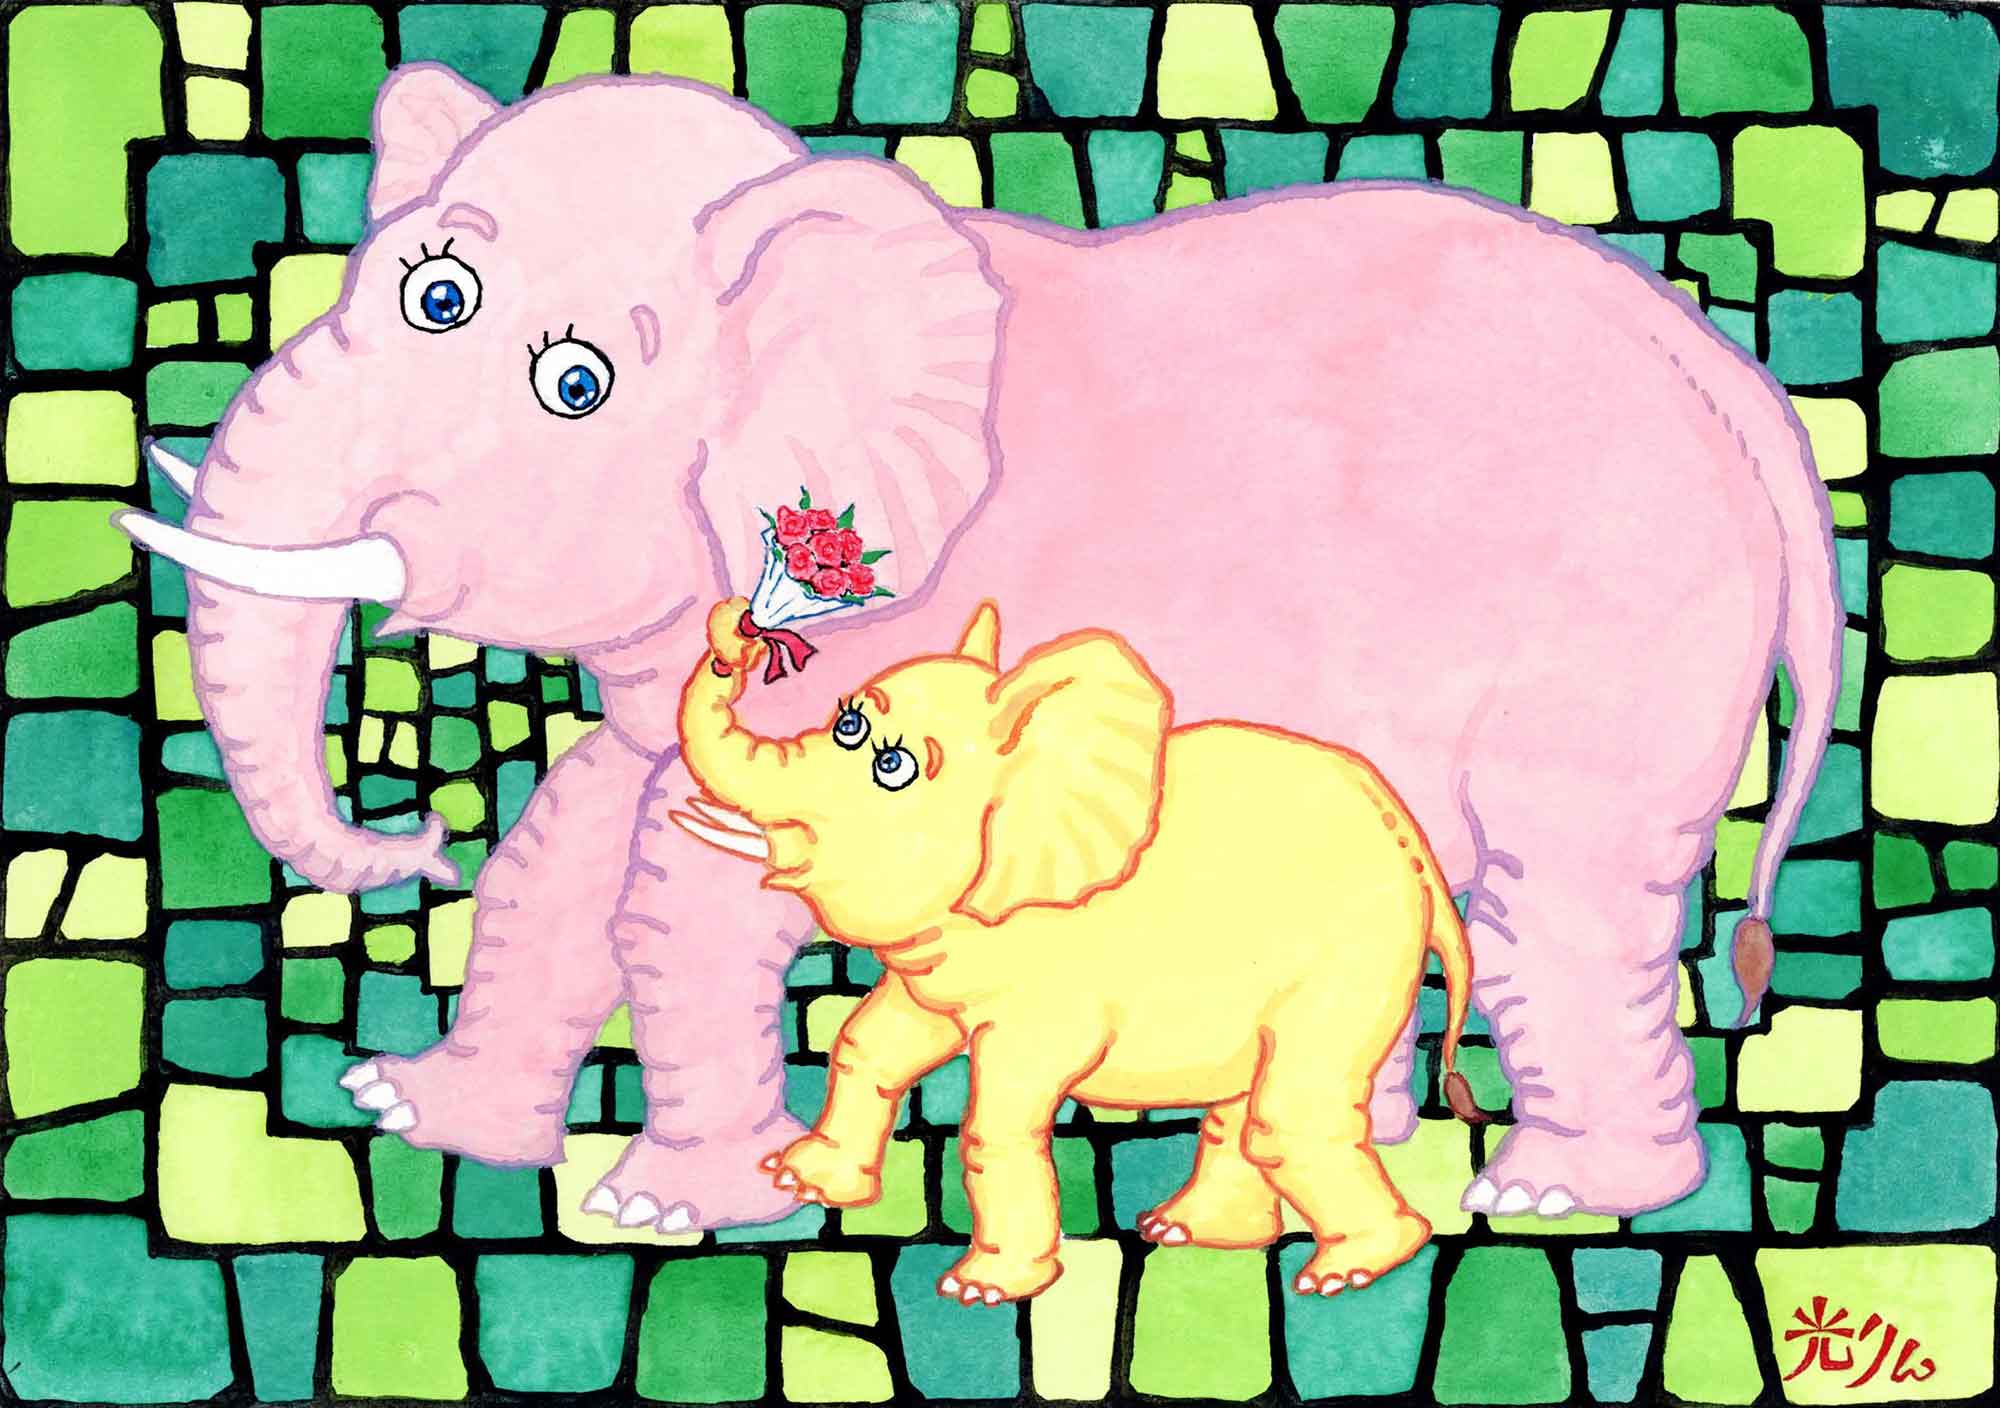 3ステンドグラス（カラフルな緑色）のような背景がある。桃色の母親ゾウとレモン色の子供ゾウが見つめ合いながら歩いている。母親ゾウの大きさは子供ゾウの三倍ちかくある。子供ゾウは鼻先でバラの花束を掴み母親ゾウの耳元まで持ち上げている。母親ゾウは鼻を子供ゾウの顔の前まで下げて合図を送っている。 右下に作者のサインがある。